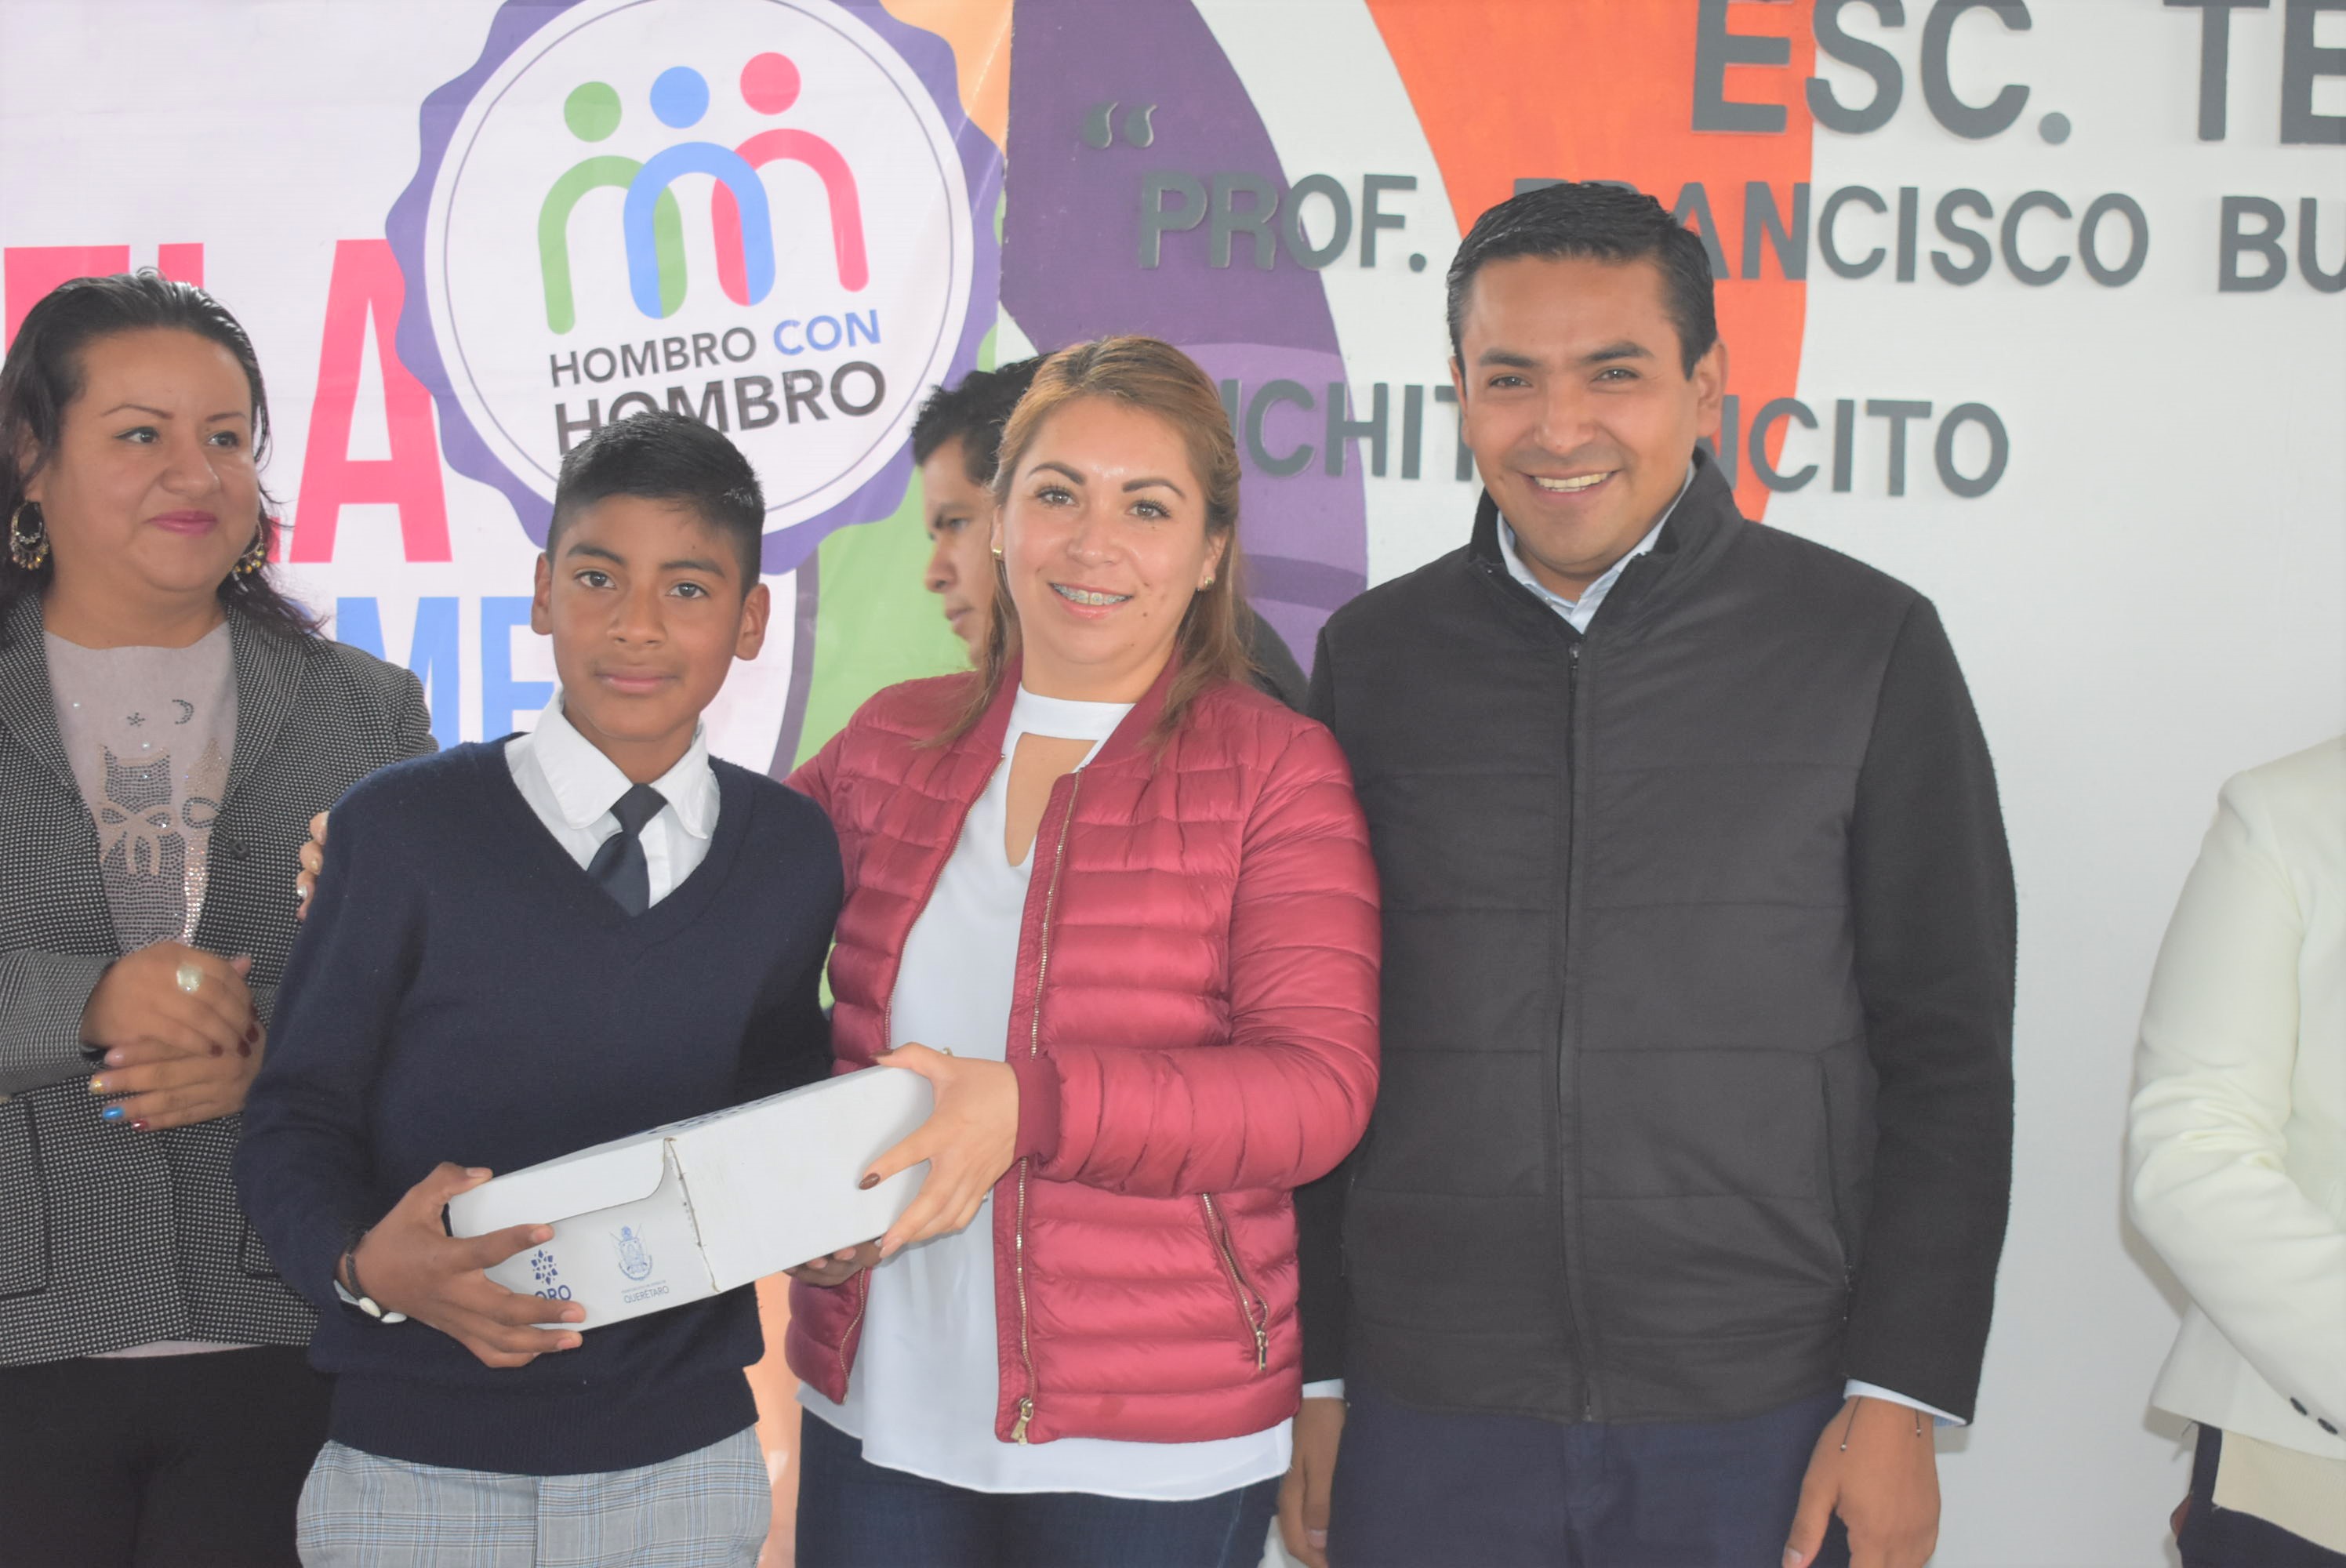 "Mi prioridad es fortalecer la educación y la economía de las familias vulnerables de Pedro Escobedo": Amarildo Bárcenas.